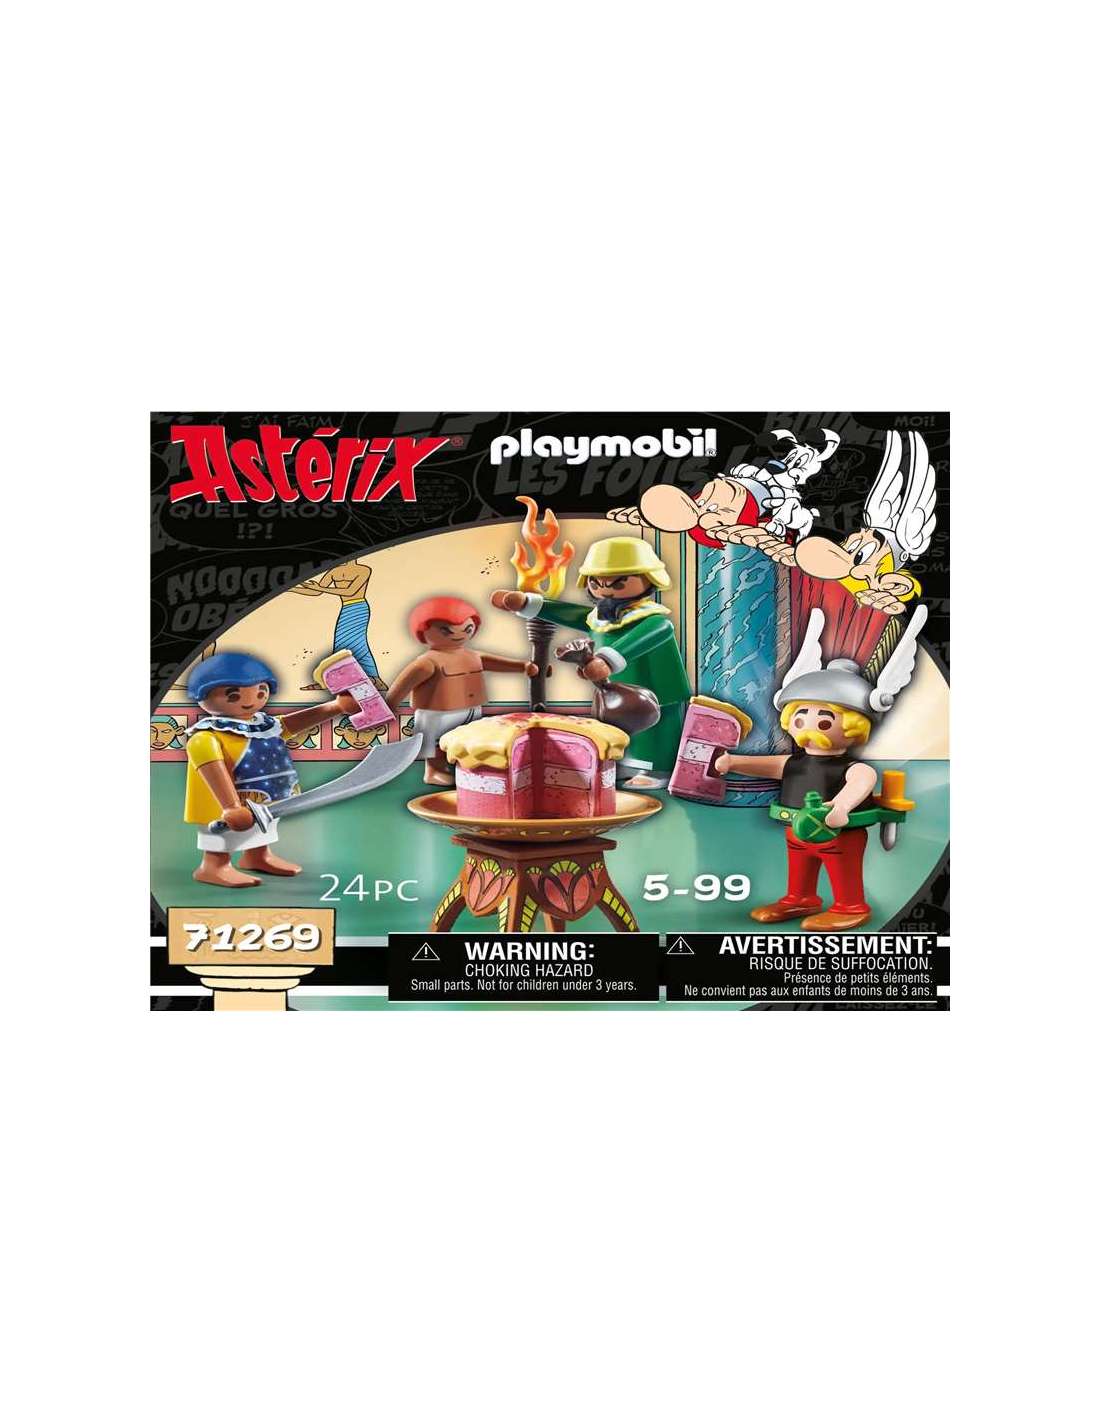 Playmobil asterix: paletabis y la tarta envenenada